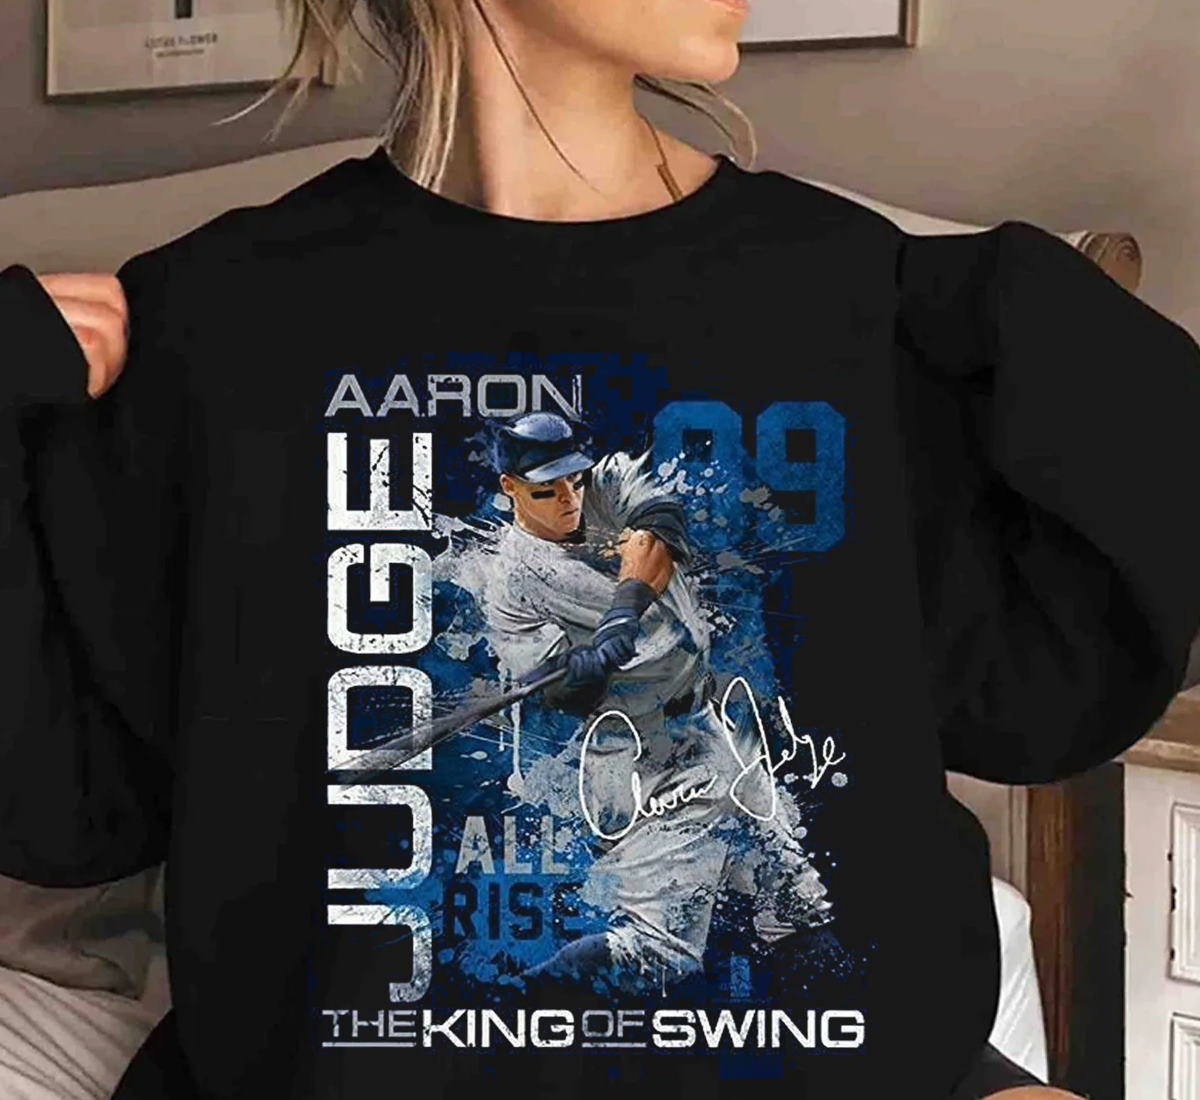 MURDERERS' ROW 2.0 - New York Yankee T-Shirts - Aaron Judge T-Shirt -  Stanton T-Shirt